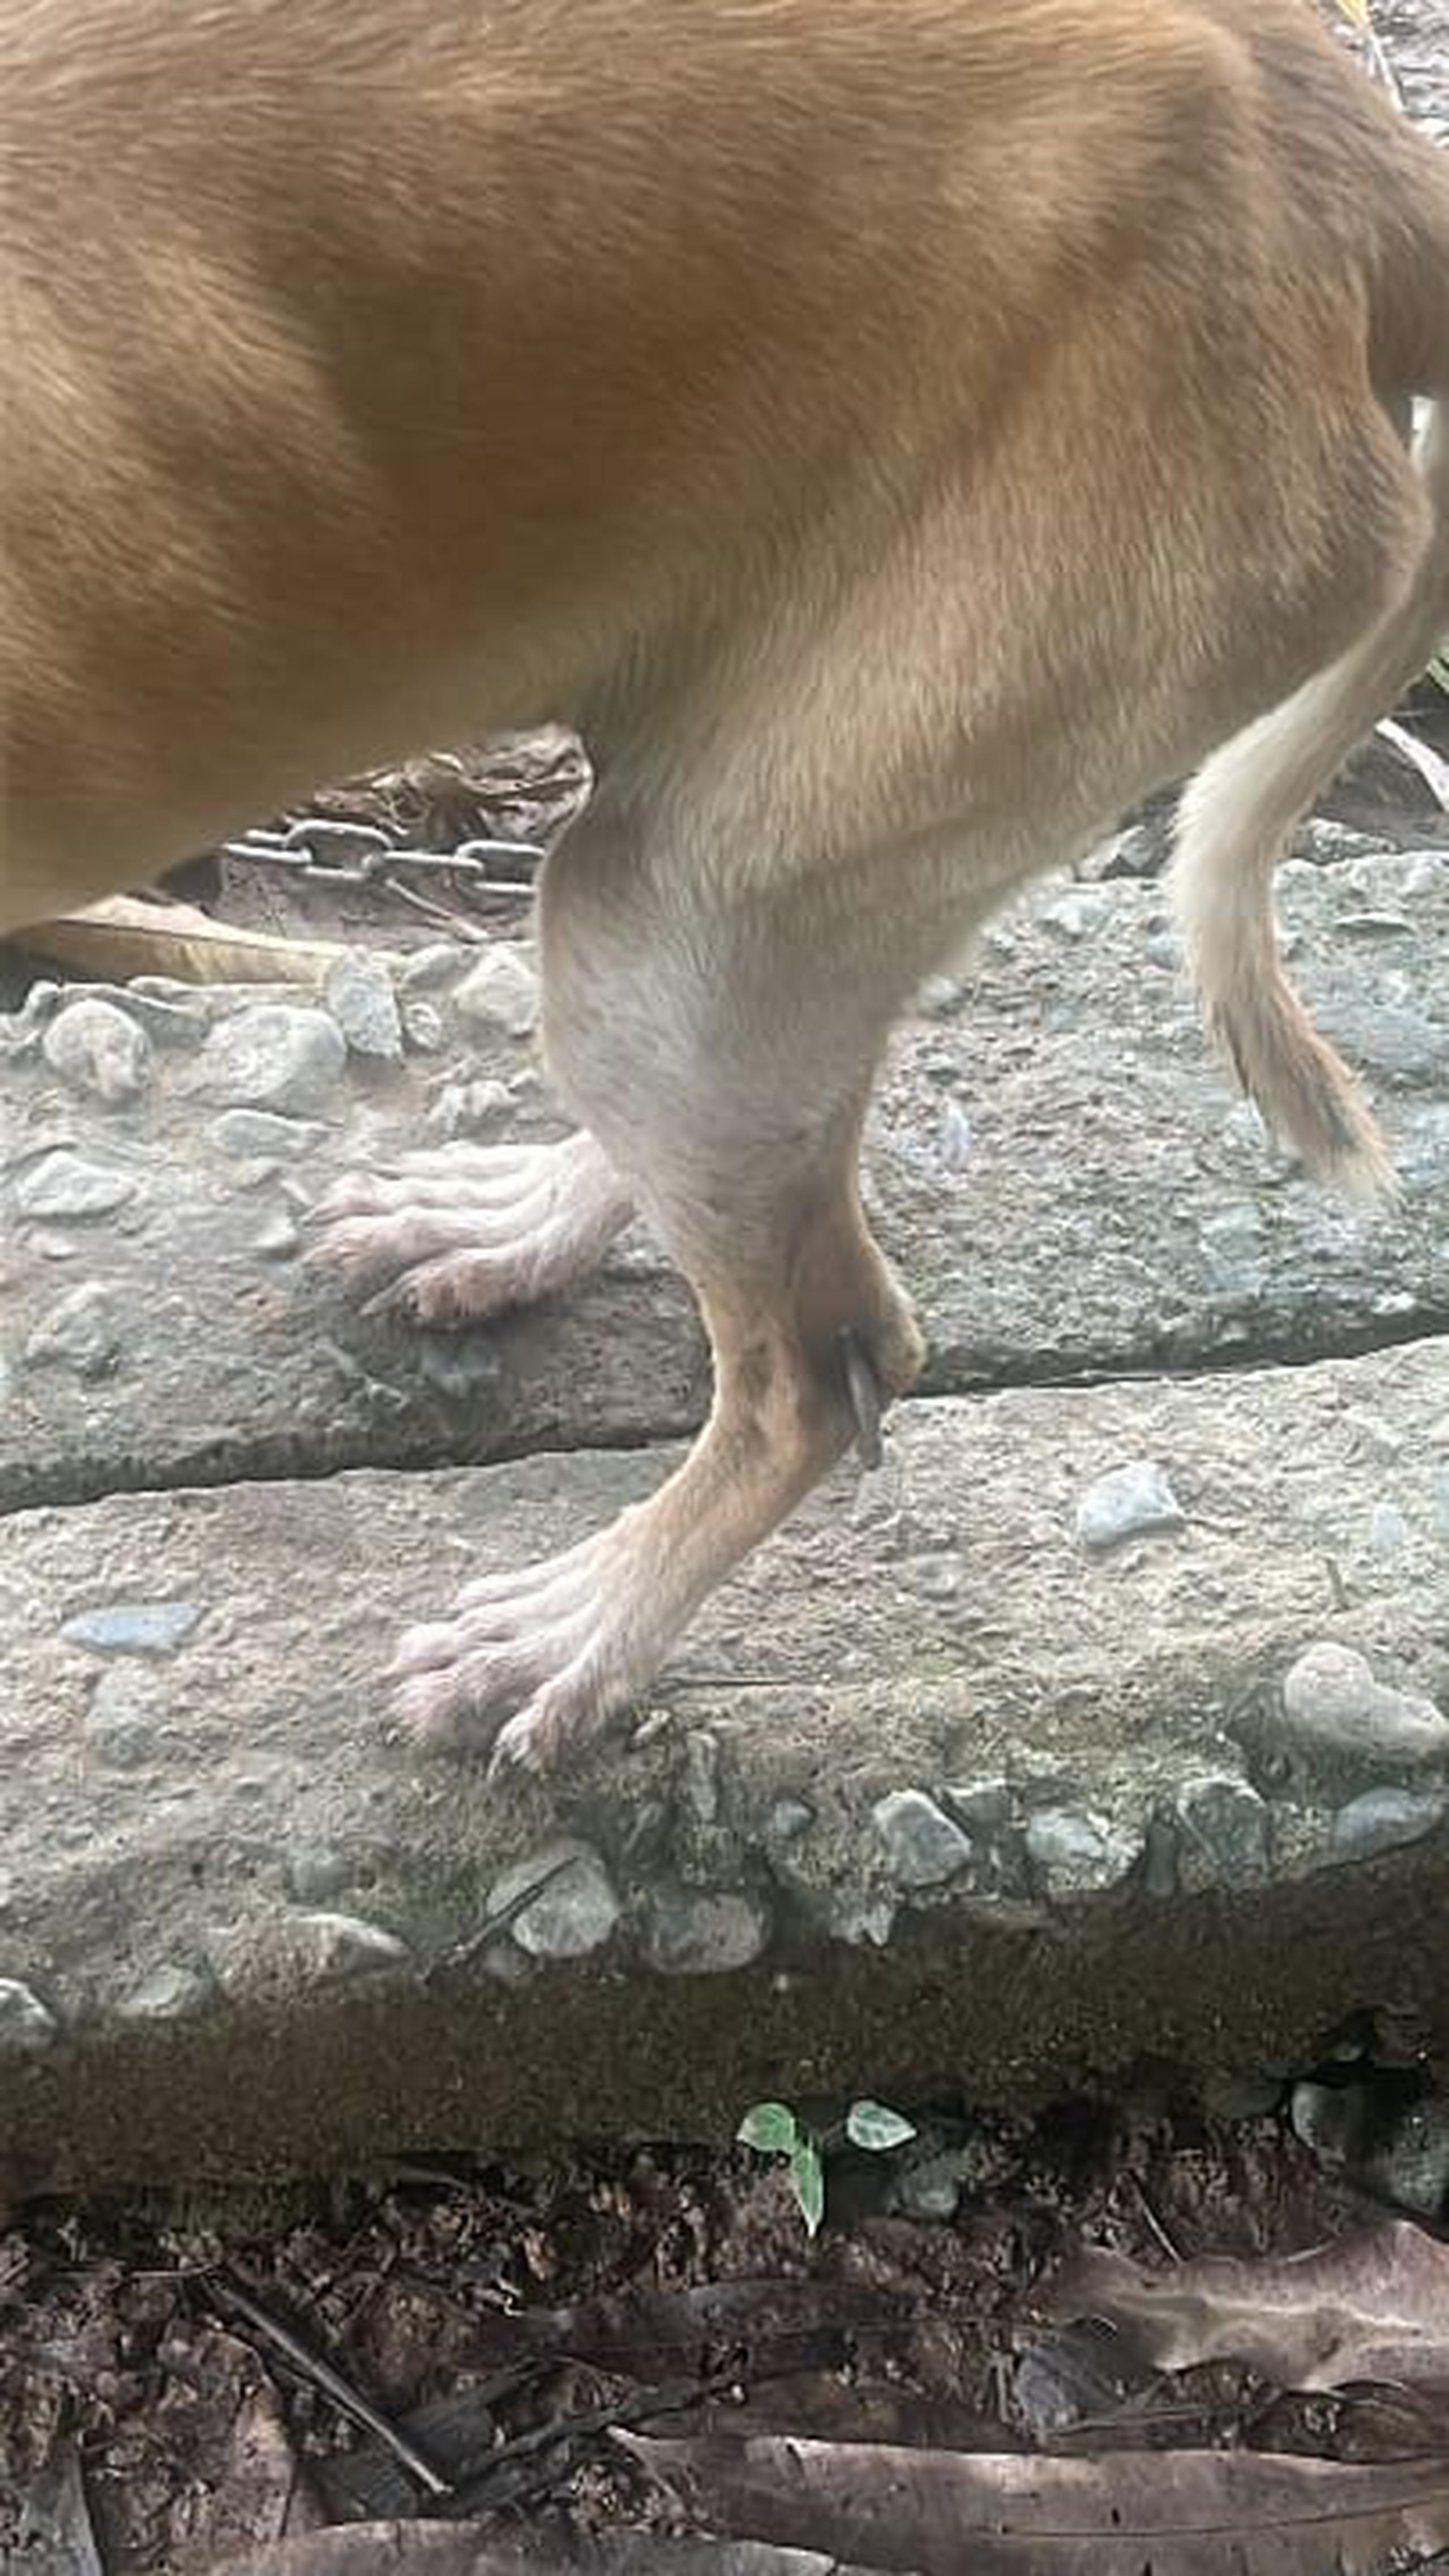 El perro tiene una argolla de metal incrustada en una pata, estaba desnutrido y amarrado con una cadena al cuello en un área sin techo, según el Negociado de la Policía de Puerto RIco.